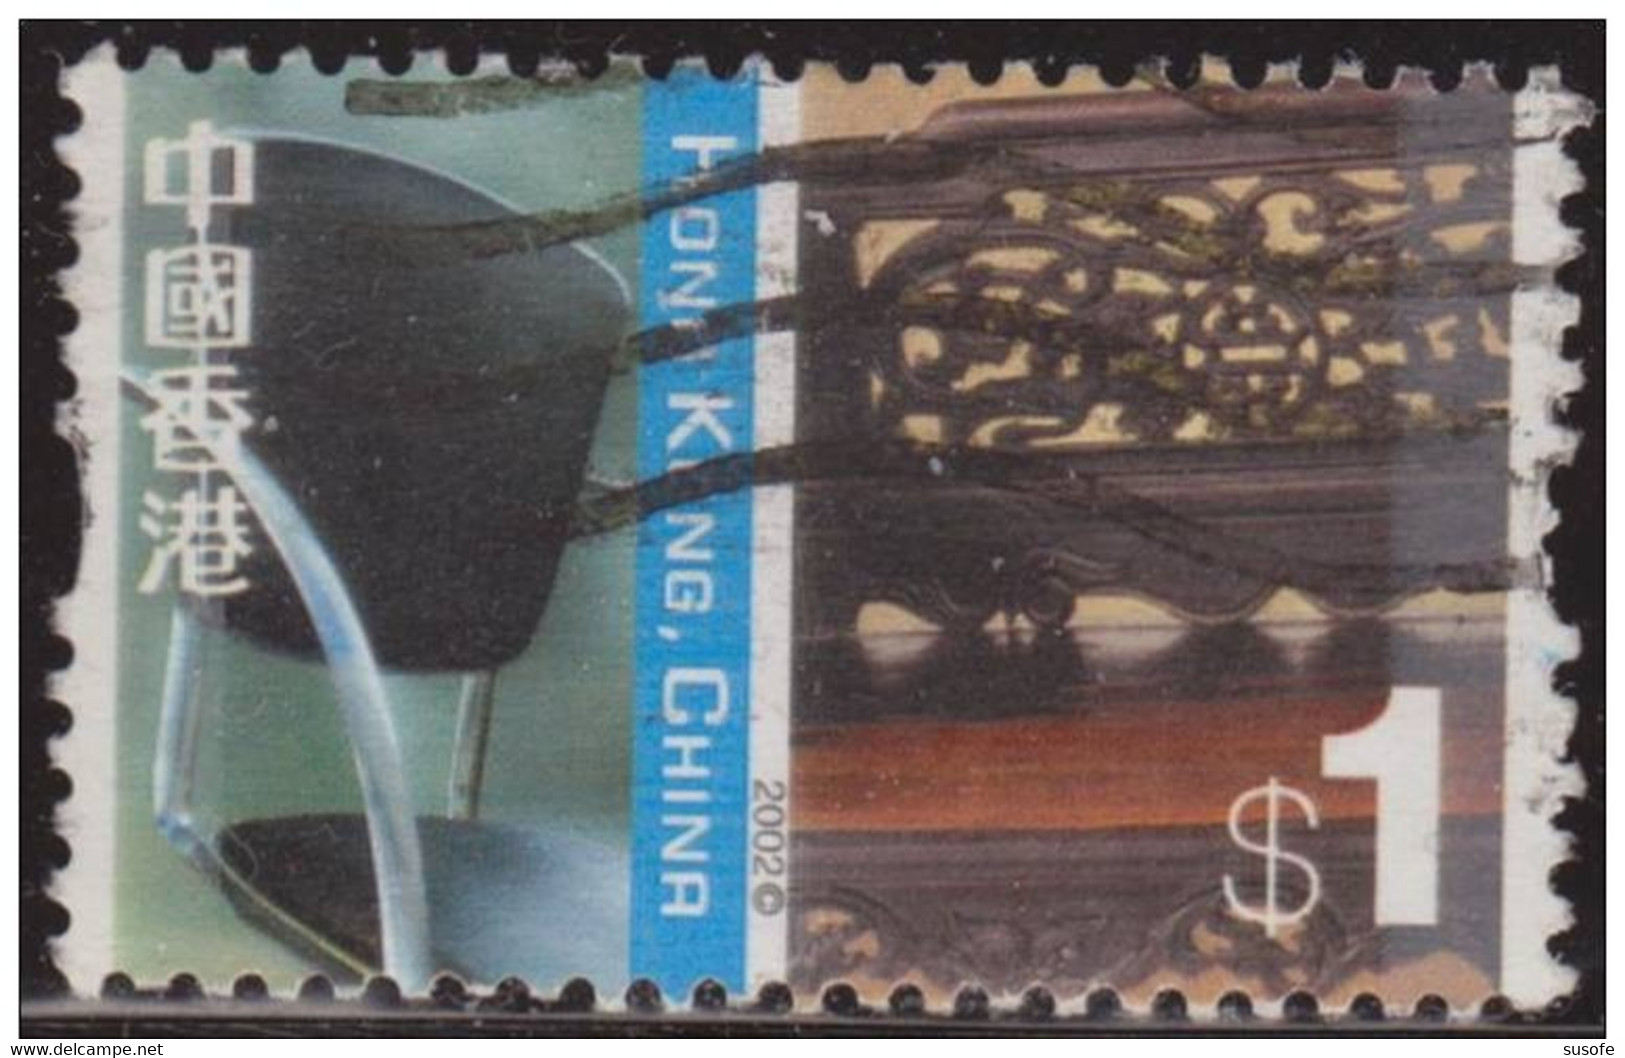 Hong Kong China 2002 Scott 1001 Sello º Cultural Diversity Silla China Y Cama Luohan Michel 1058 Yvert 1030 Stamps - Usados